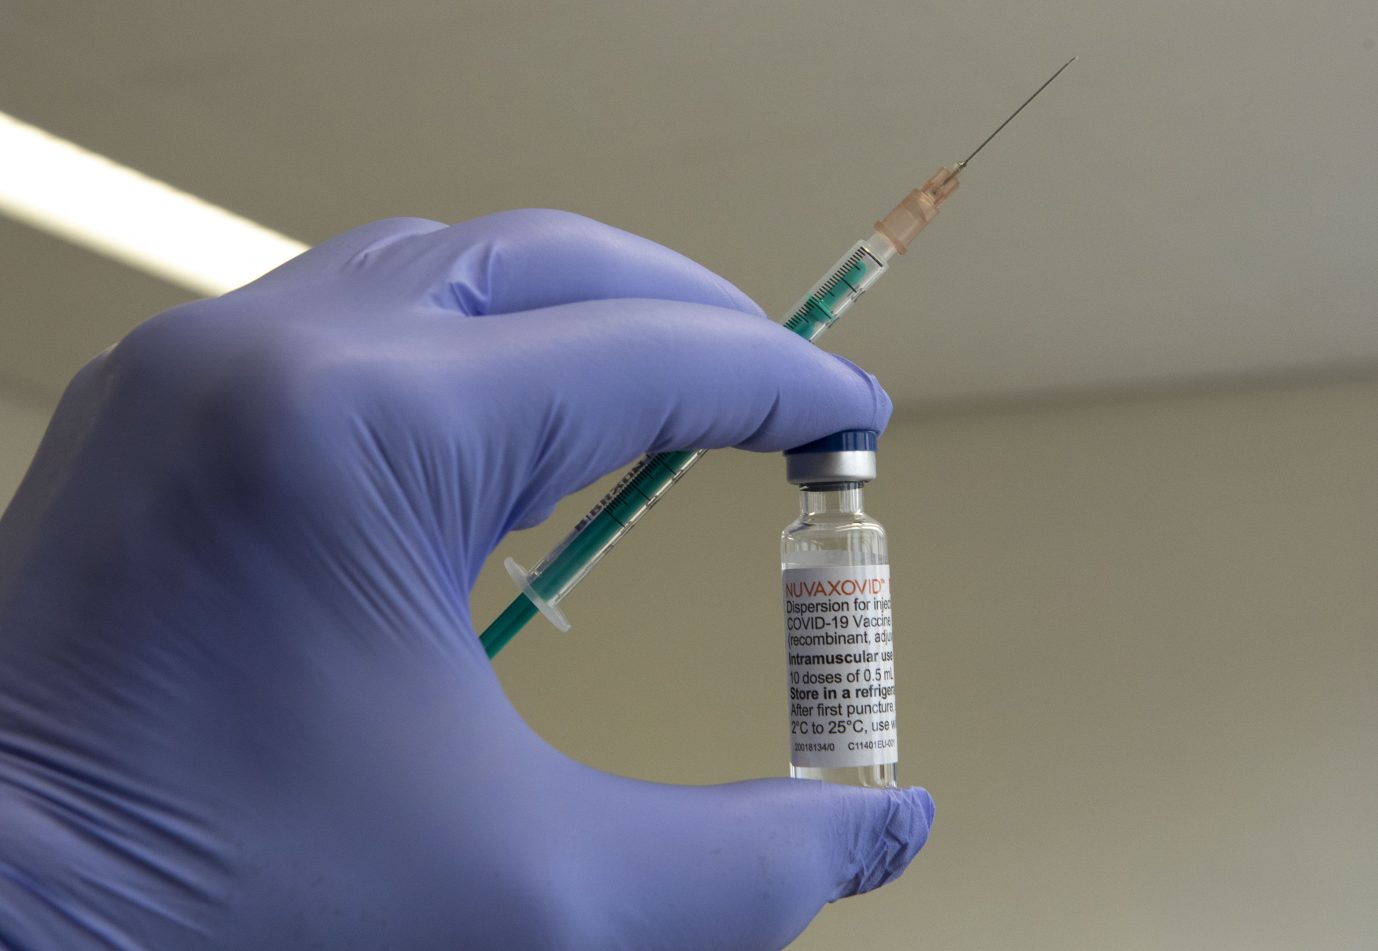 Corona-Impfung: Der "Welt"-Artikel zu Beleidigungen gegen Ungeimpfte ist verschwunden (Symbolbild) Foto: picture alliance / Ulrich Baumgarten | Ulrich Baumgarten